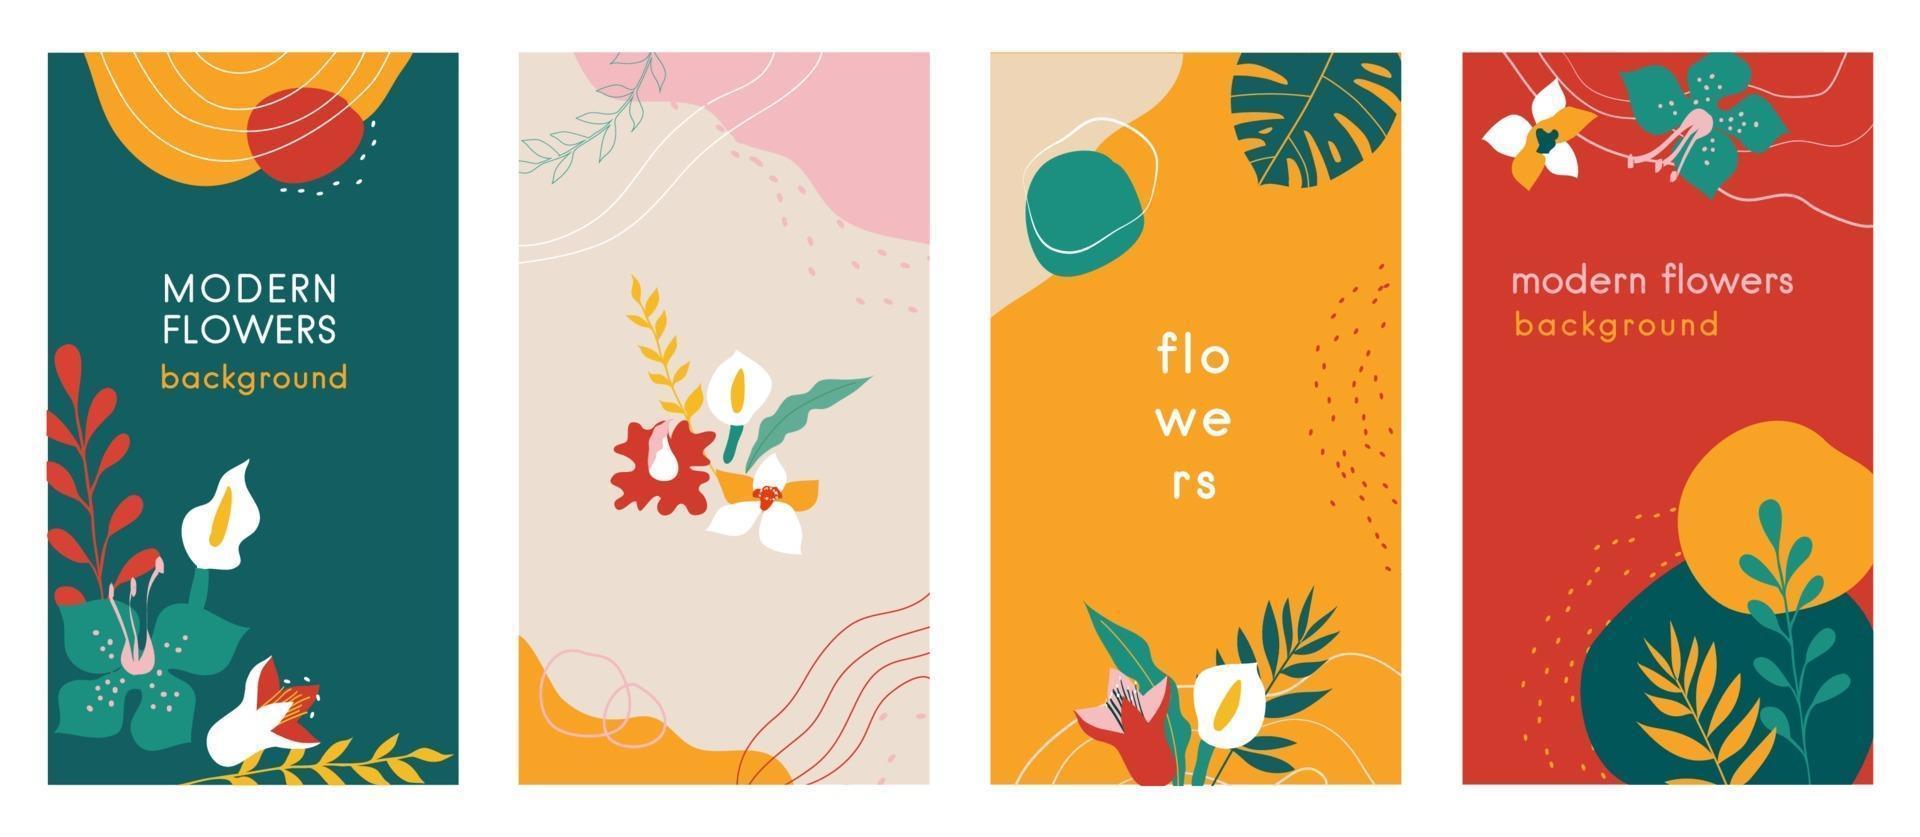 Fondos orgánicos de historias de redes sociales de flores abstractas con combinaciones de colores modernas, formas, flores y plantas, hojas de monstera, formato vertical. vector